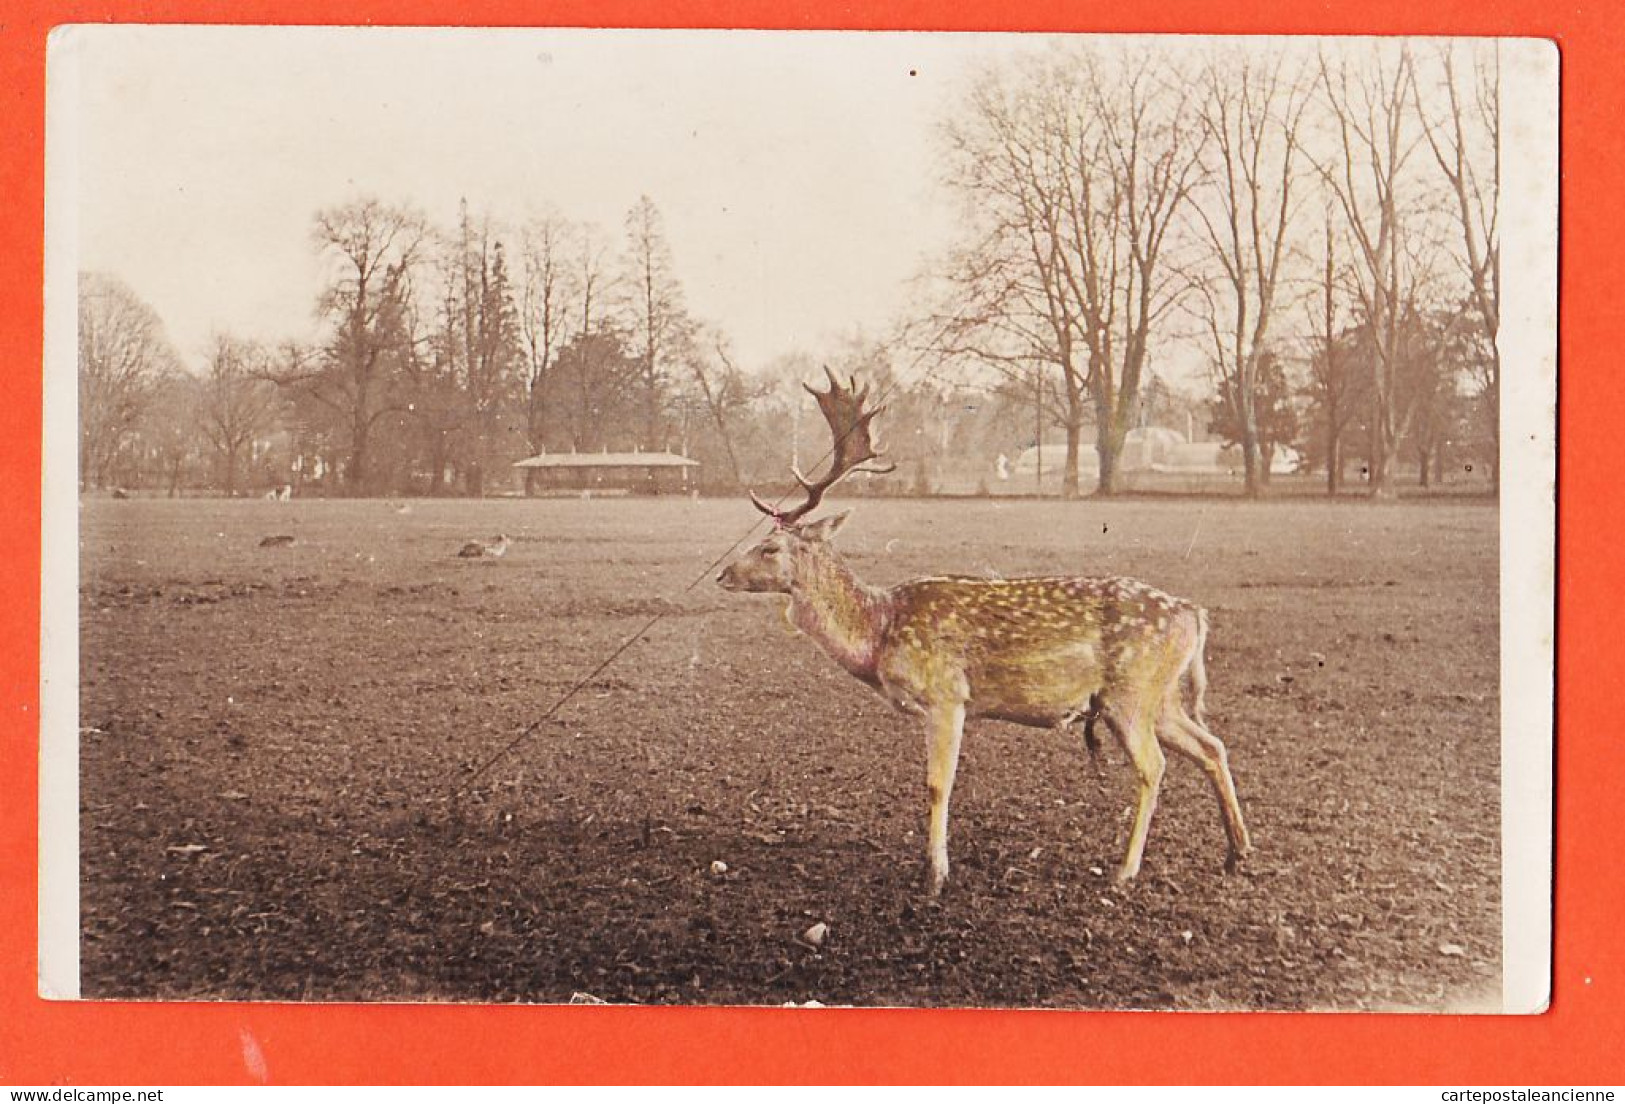 08900 / ⭐ ♥️ Rare Carte-Photo Couleur (pâle) ! LYON 69-Rhone Parc TÊTE D'OR Un DAIM 1910s  - Lyon 6